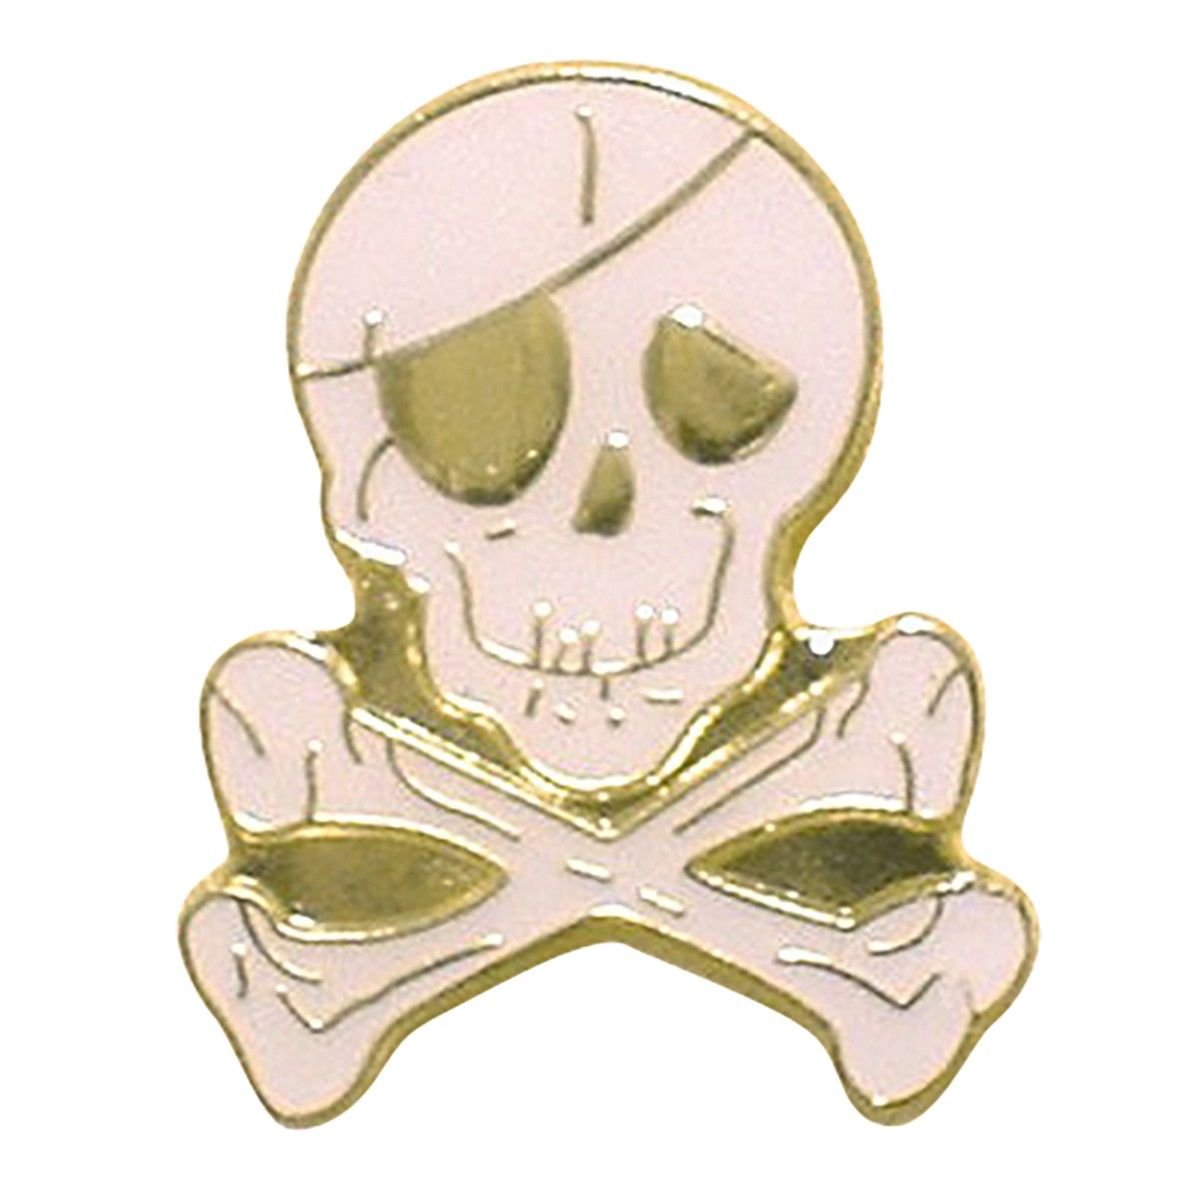 Hvid Skull & Crossbones Pin - Reversnål fra The Prince's Own hos The Prince Webshop